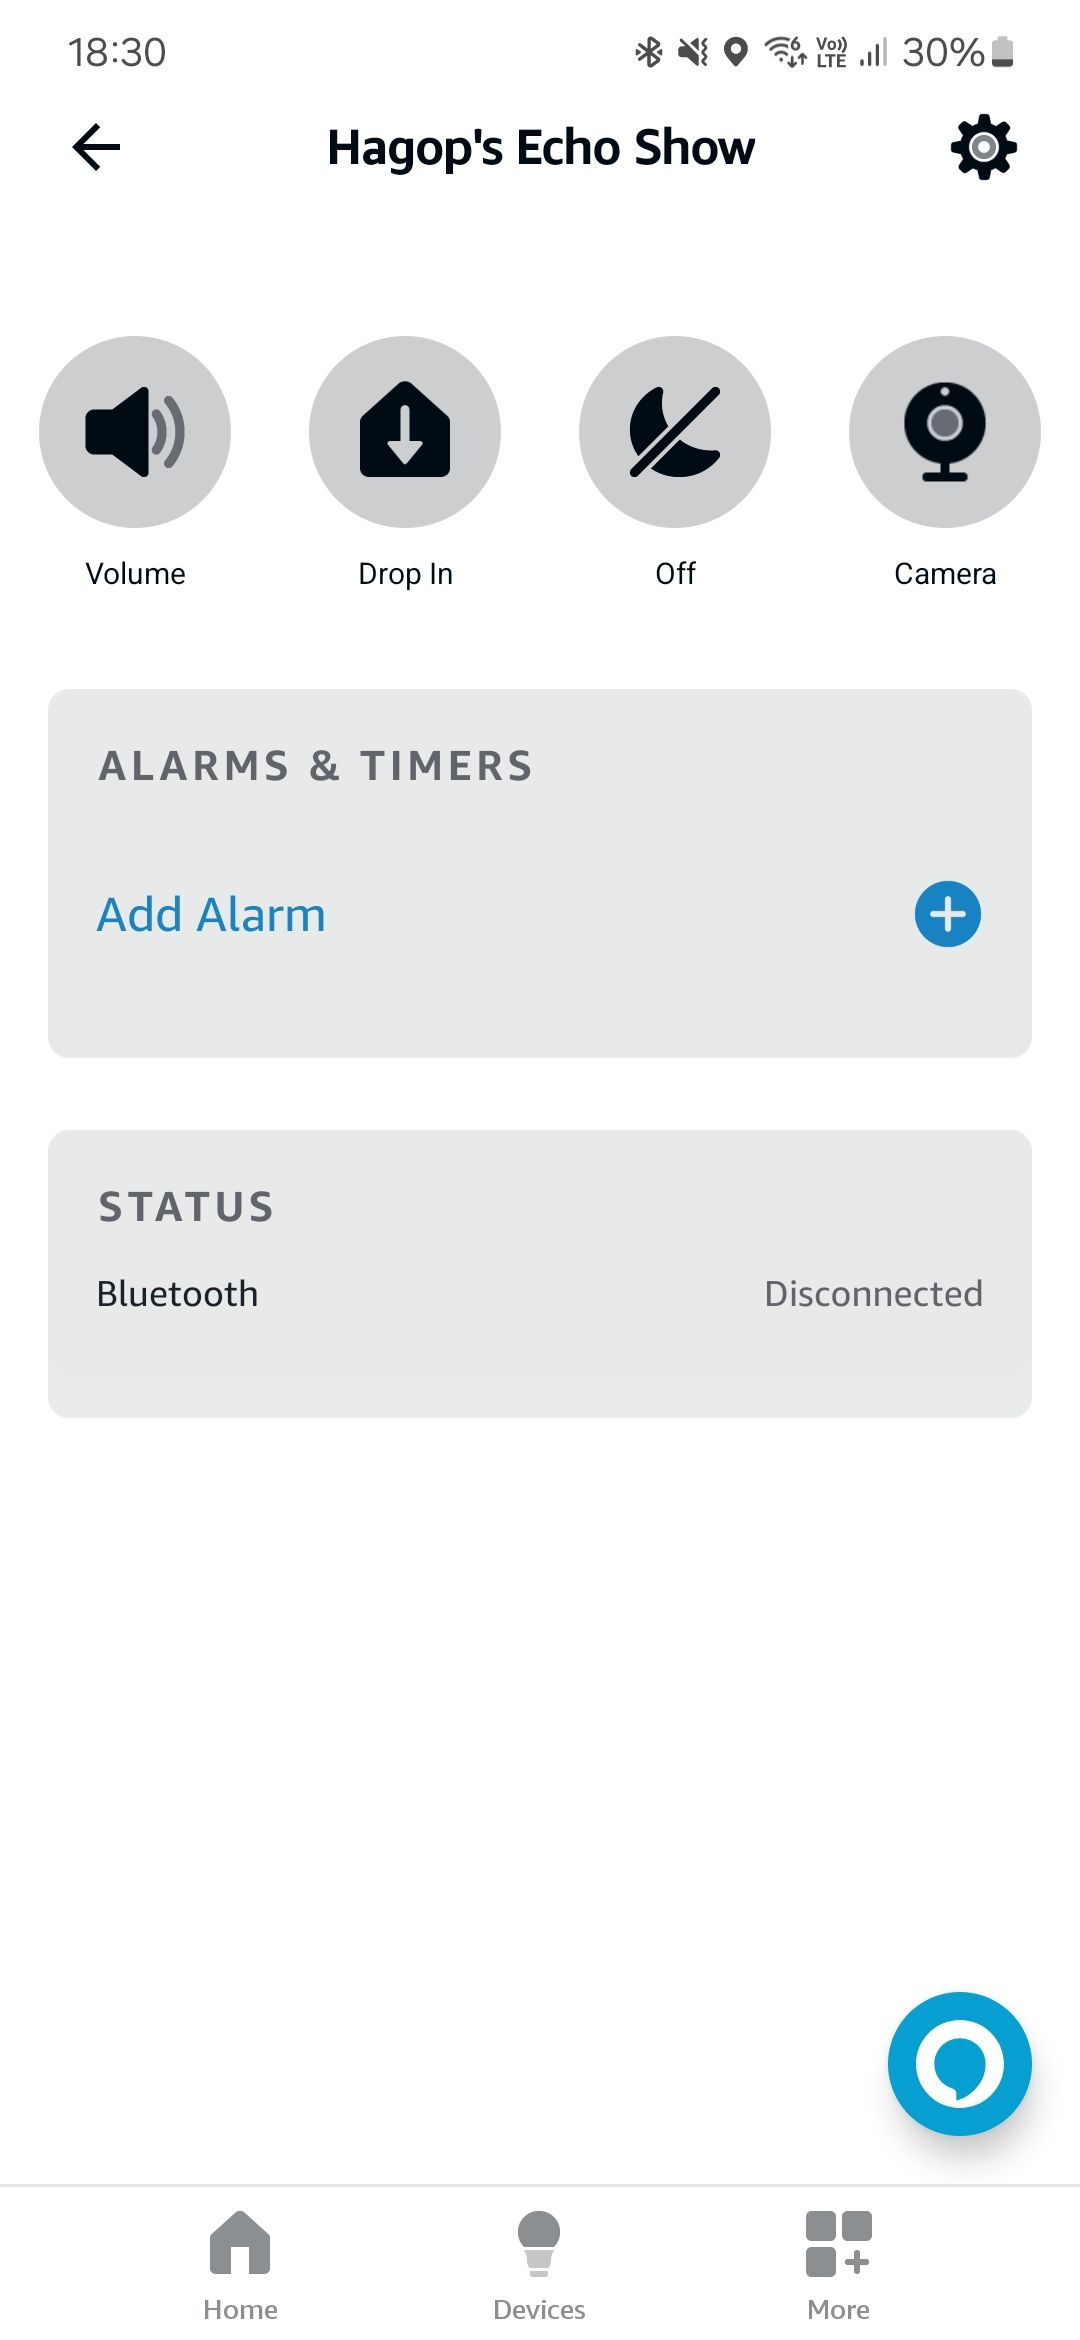 Captura de tela do aplicativo Alexa mostrando o painel do Echo Show